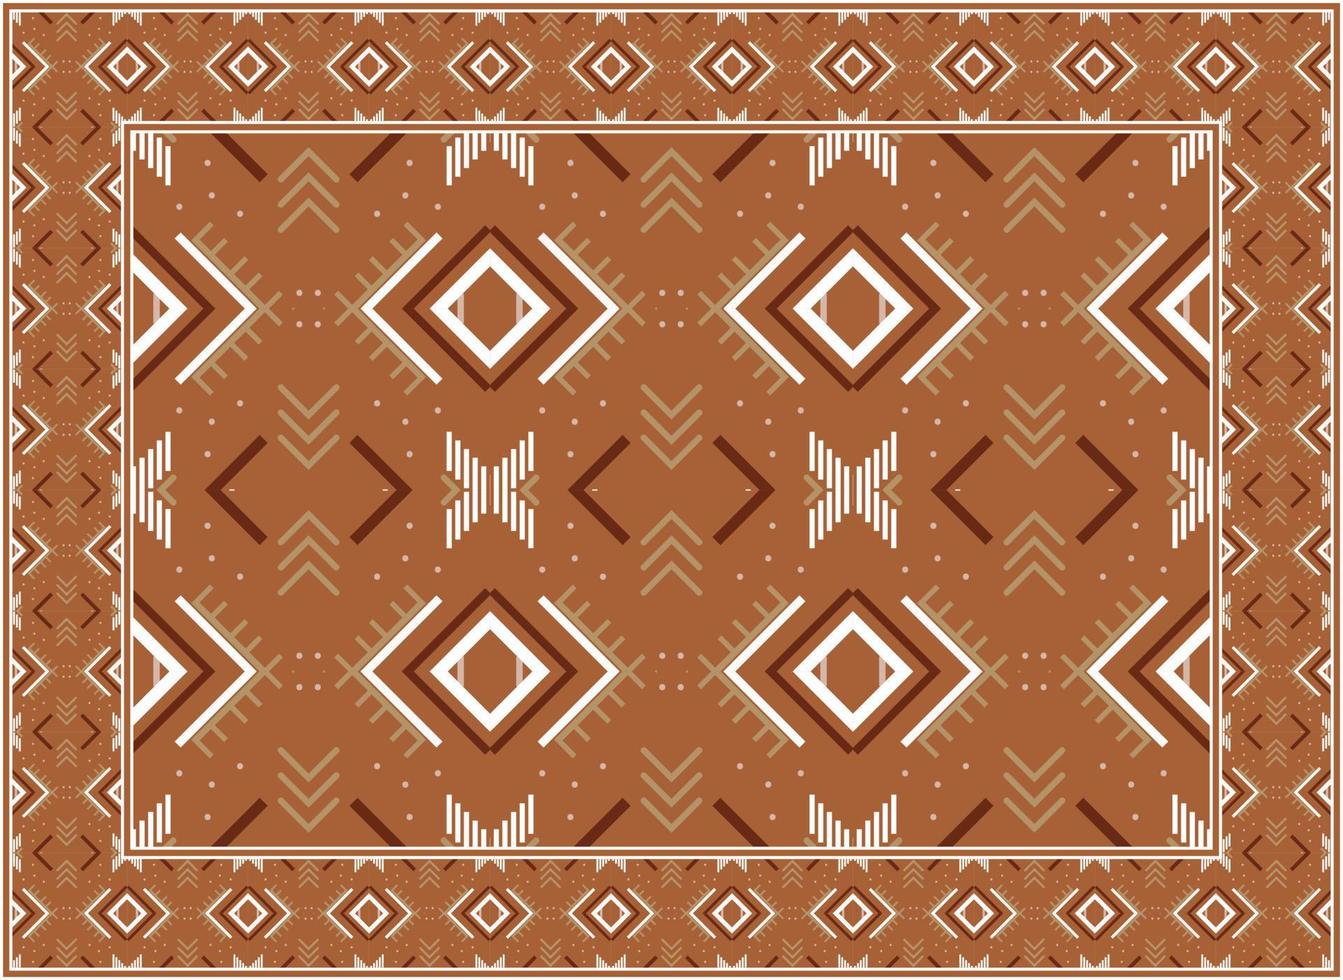 moderno orientale tappeti, africano etnico senza soluzione di continuità modello boho persiano tappeto vivente camera africano etnico azteco stile design per Stampa tessuto tappeti, asciugamani, fazzoletti, sciarpe tappeto, vettore